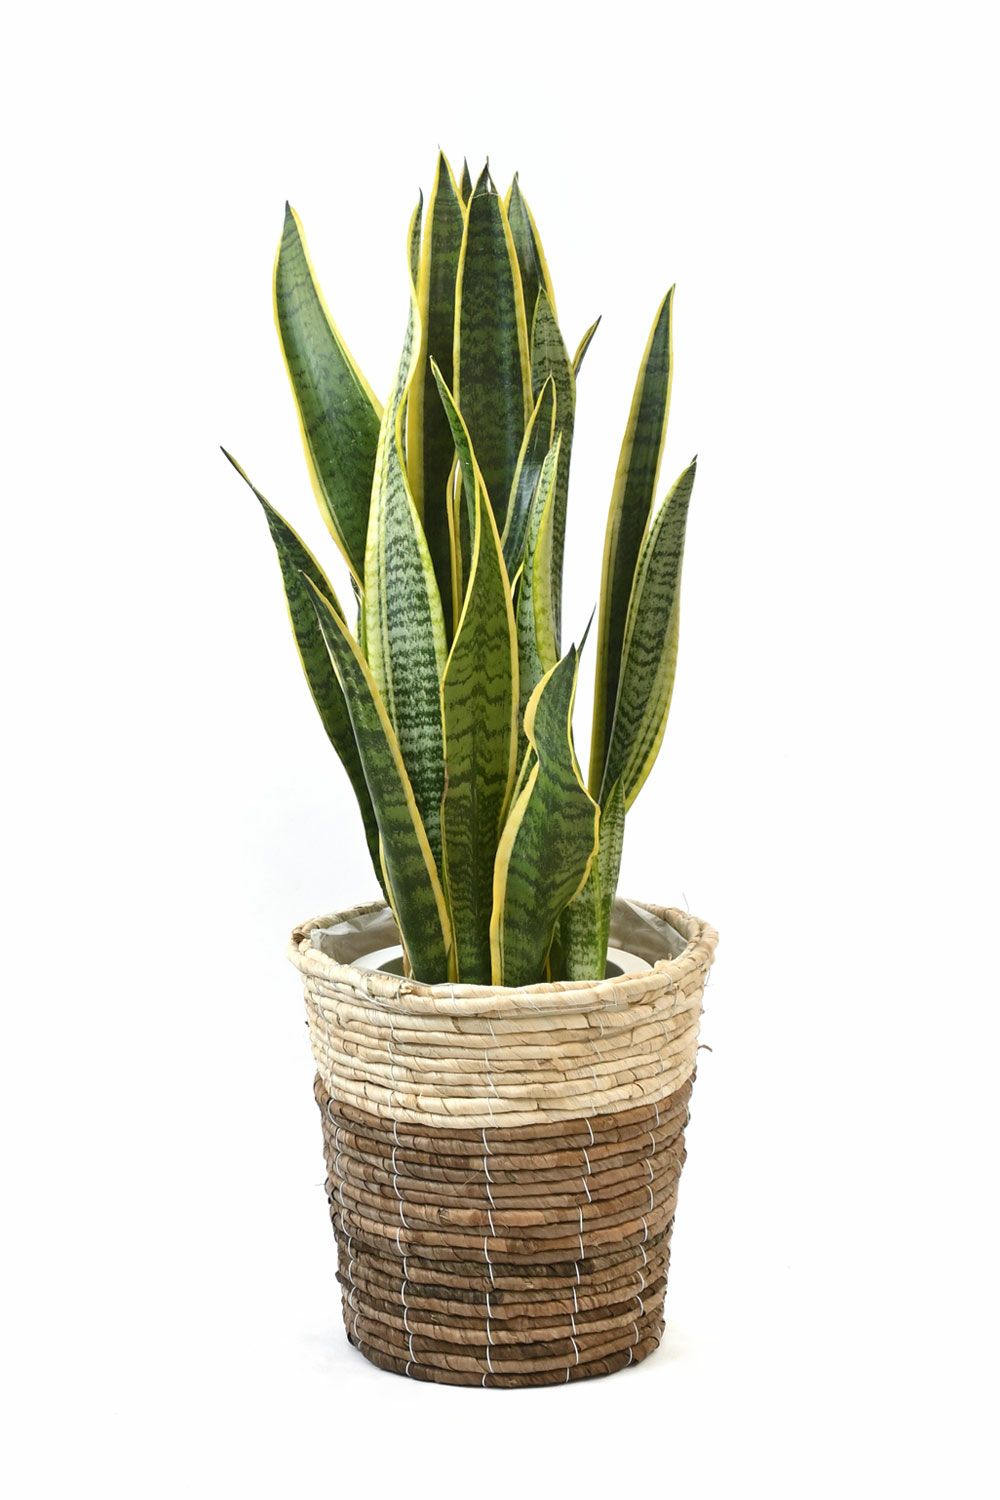 サンスベリア・ローレンティー 7号鉢 3種類から選べる鉢カバー付 観葉植物